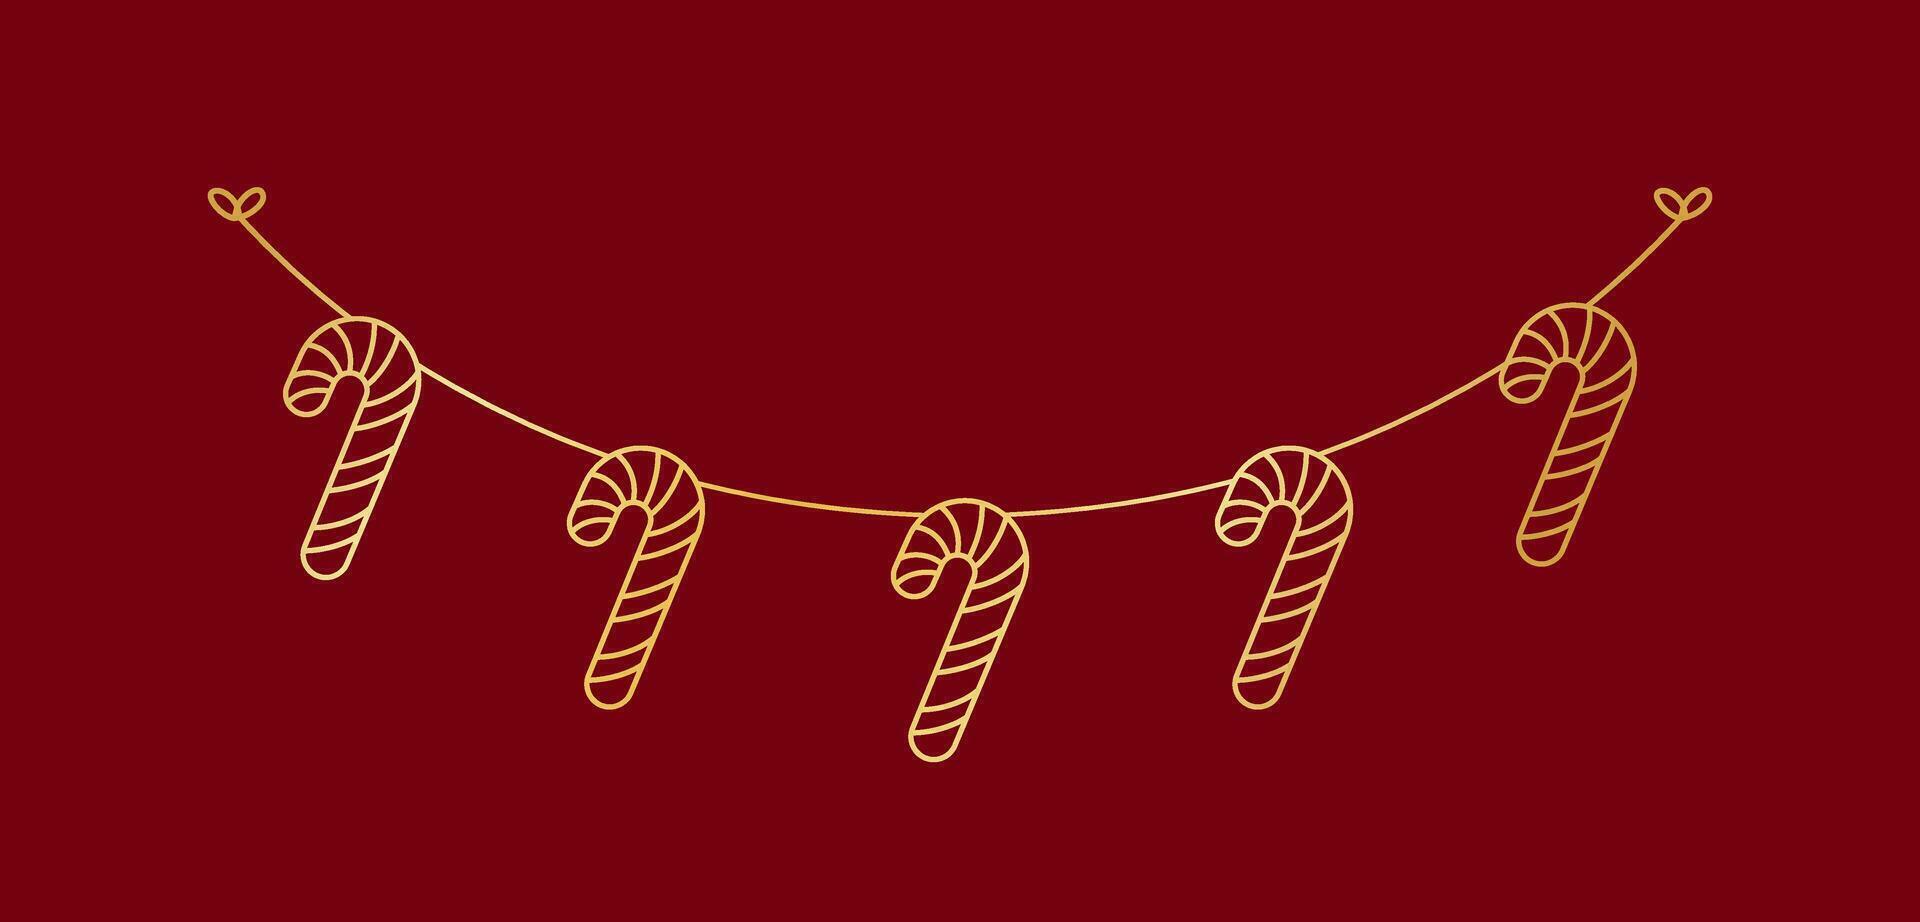 or bonbons canne guirlande griffonnage ligne art vecteur illustration, Noël graphique de fête hiver vacances saison bruant